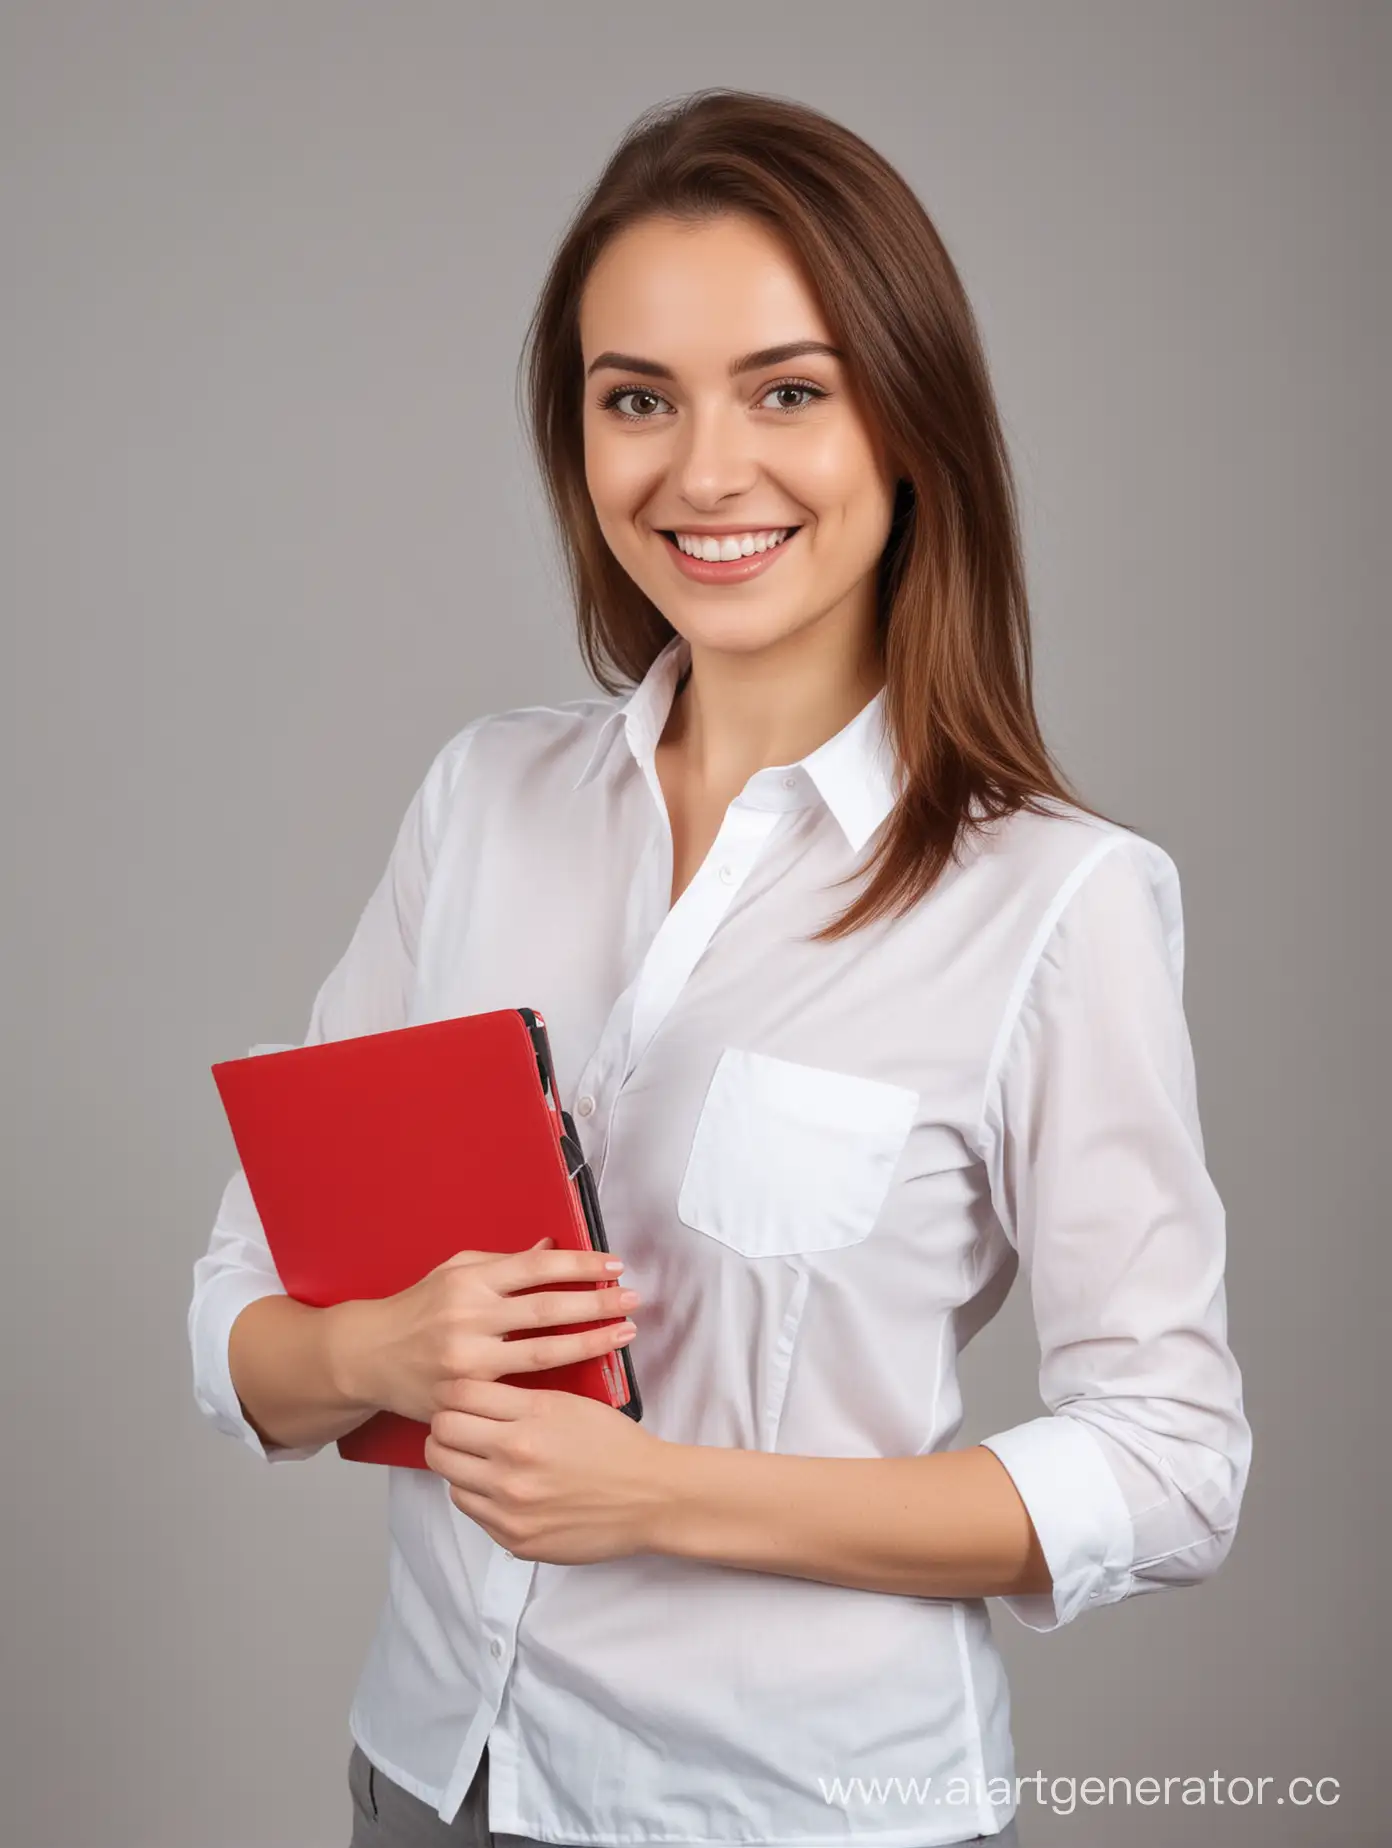 Улыбающаяся женщина в белой рубашке с красной папкой в руке делает расчет